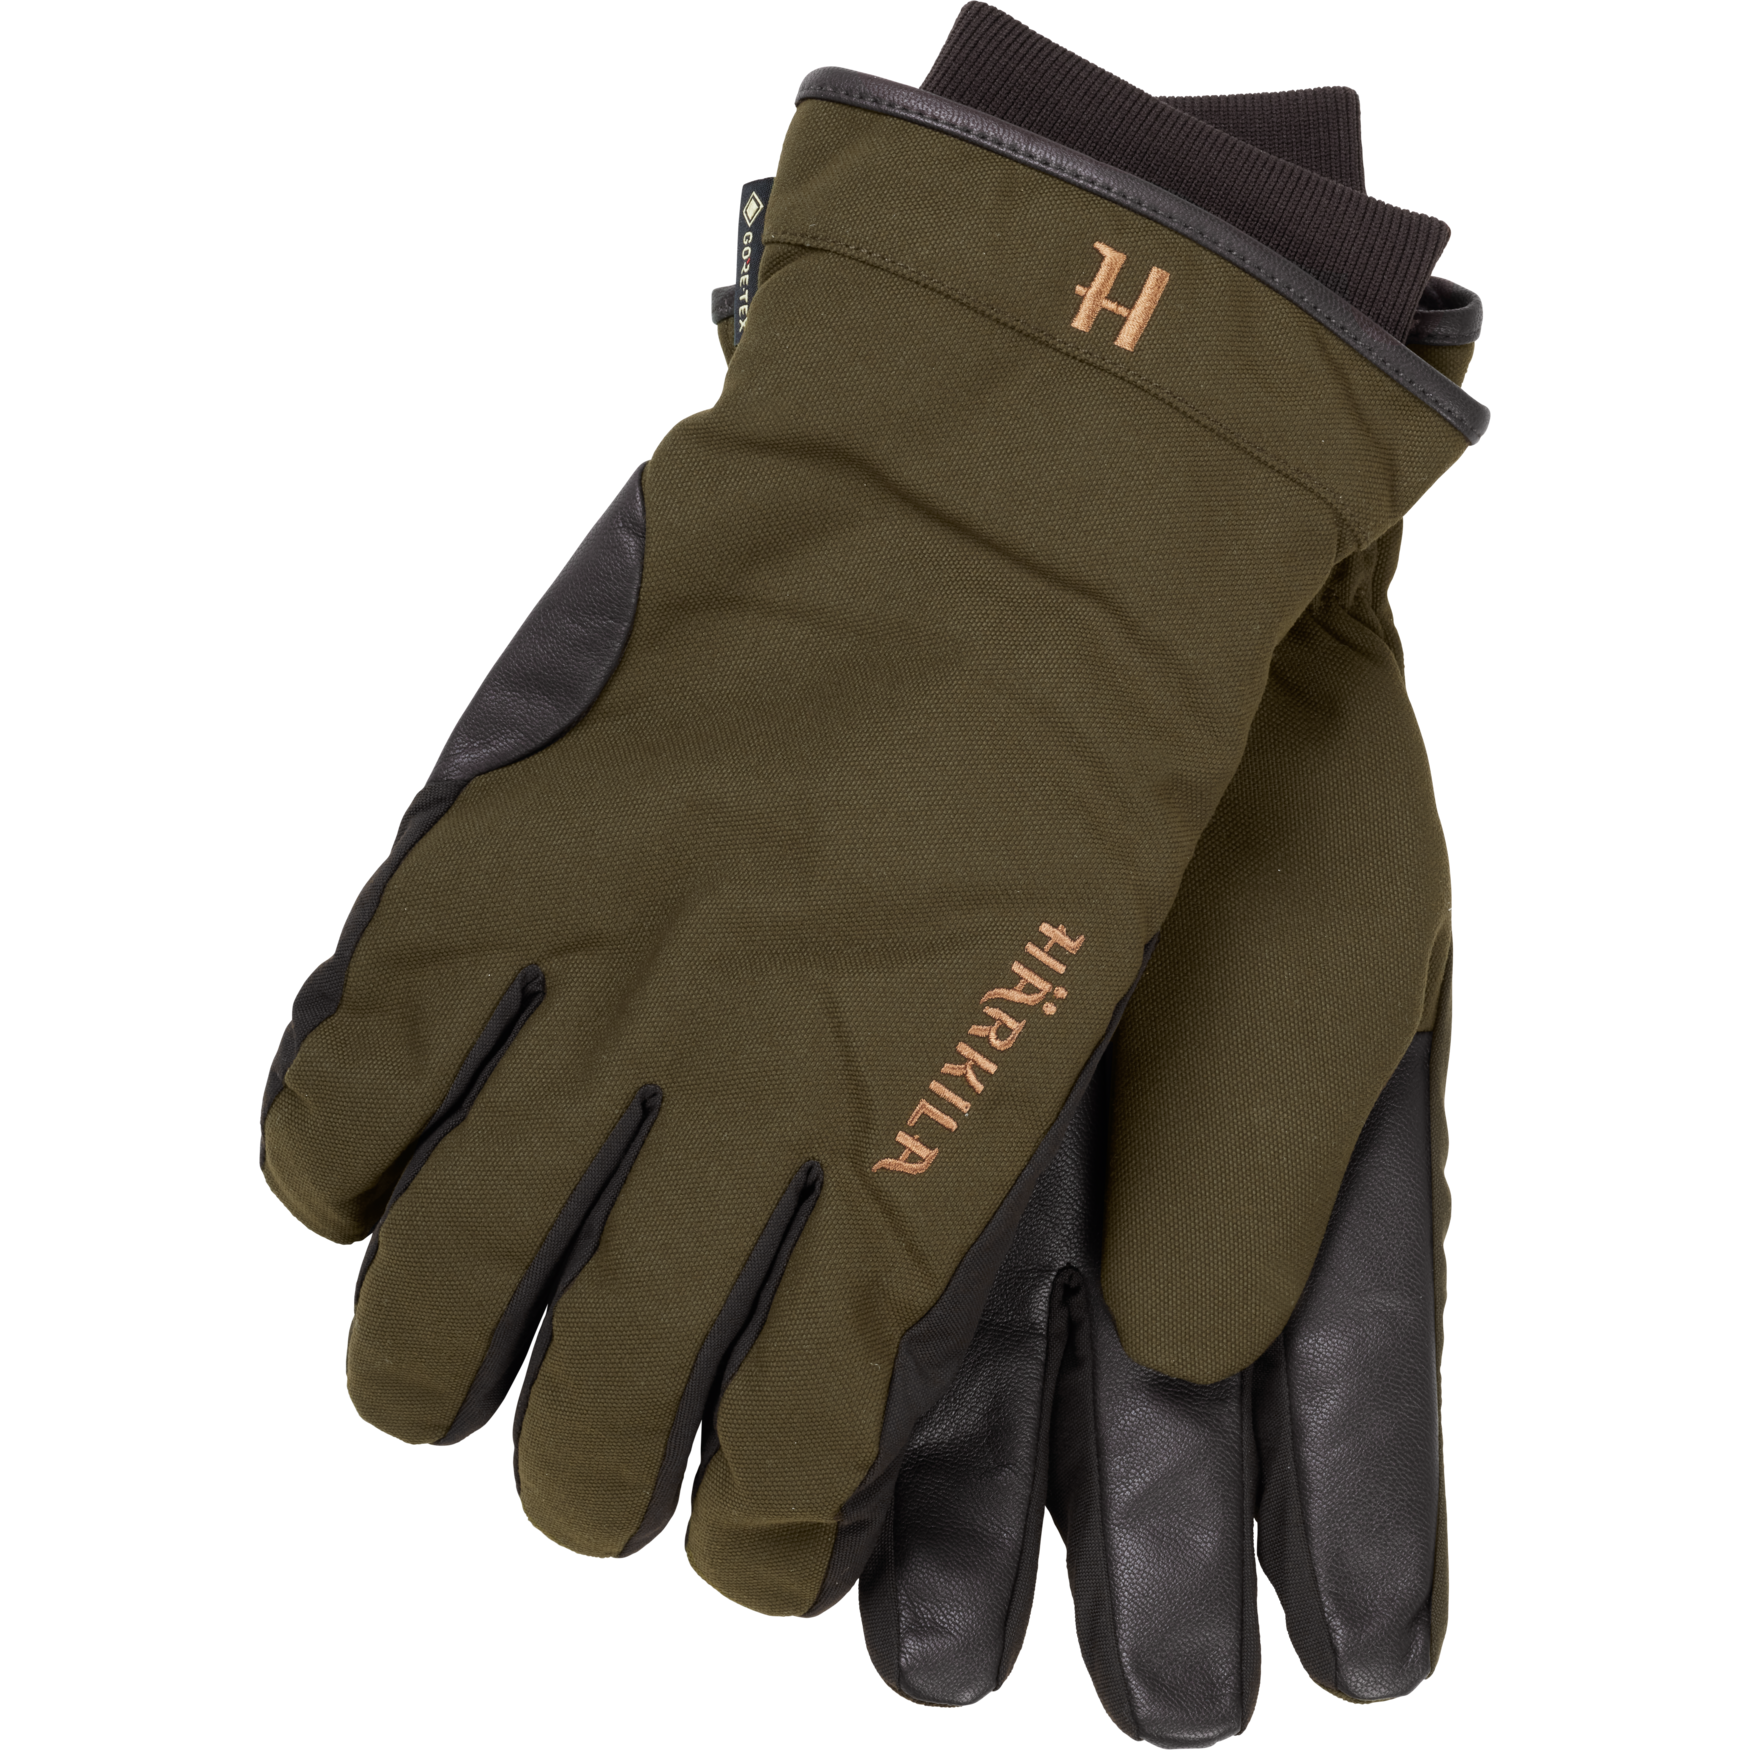 Pro Hunter GTX gloves